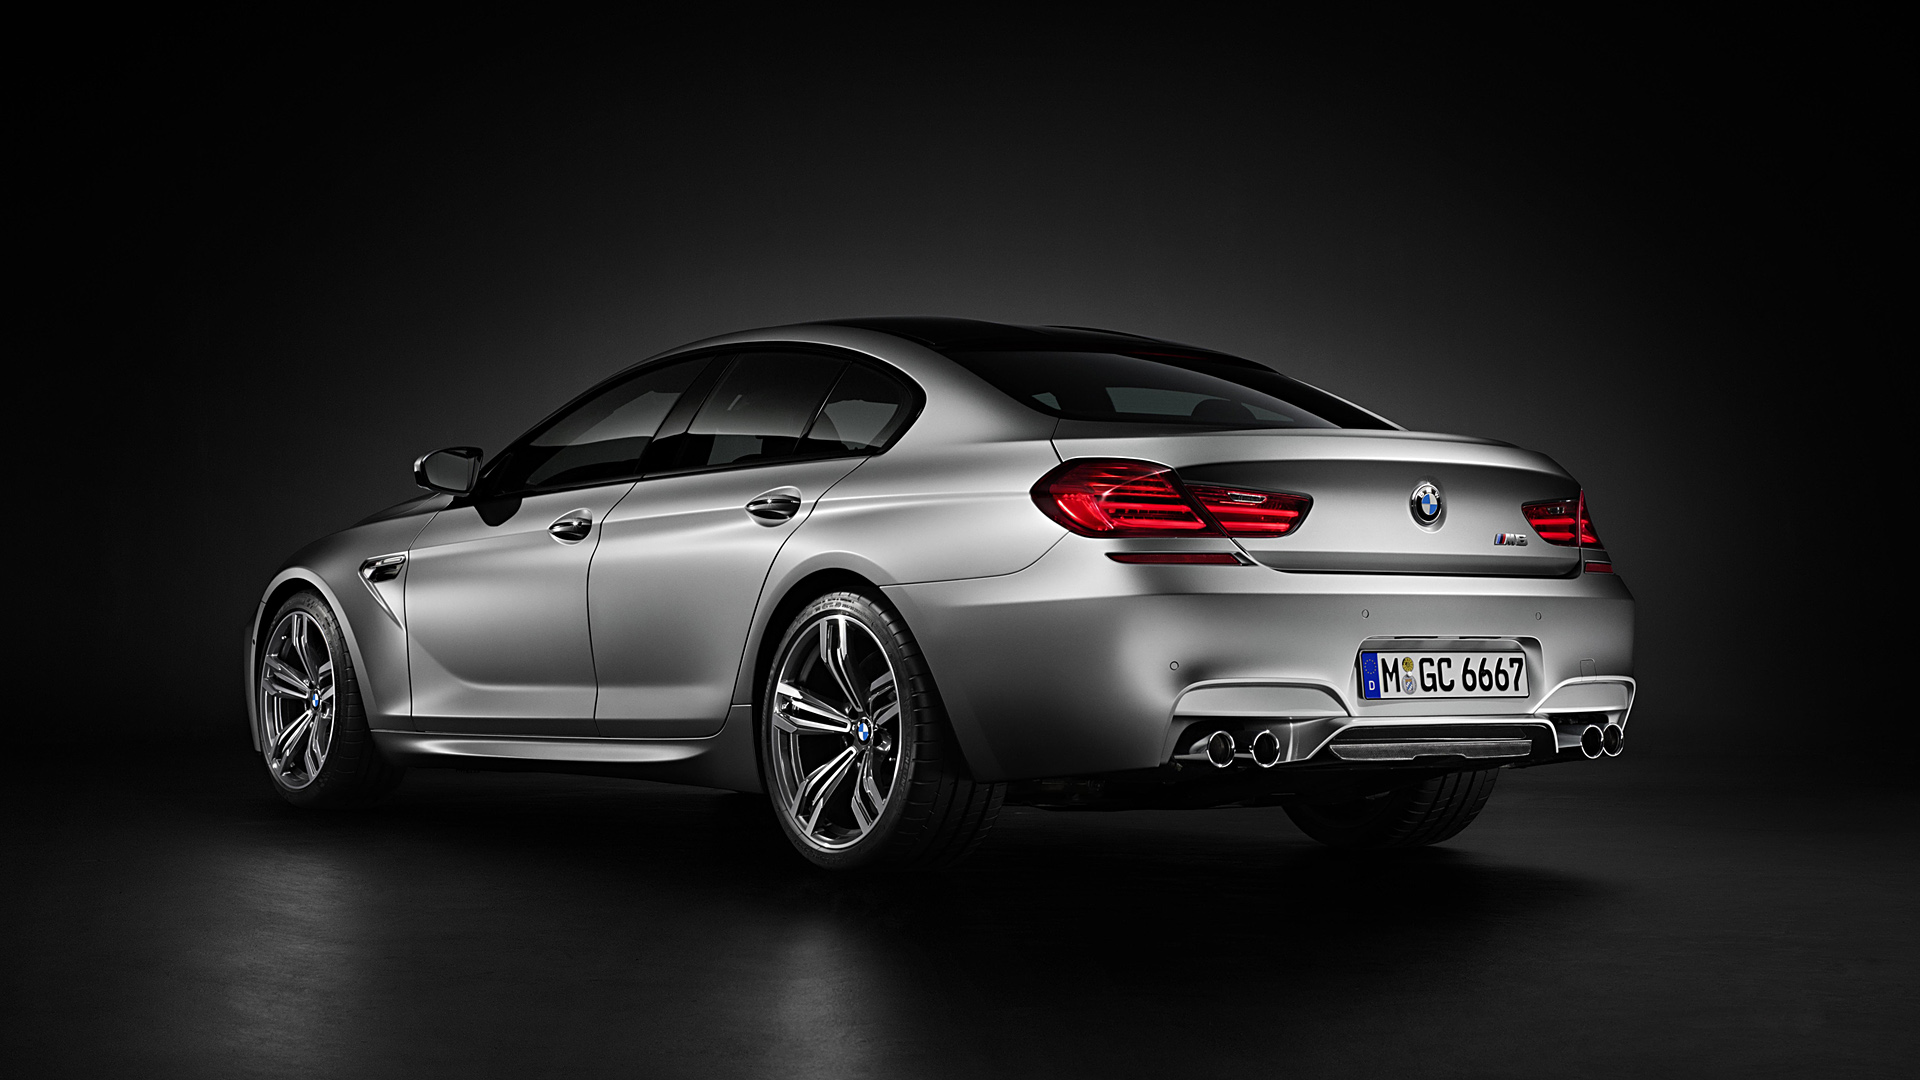  2014 BMW M6 Gran Coupe Wallpaper.